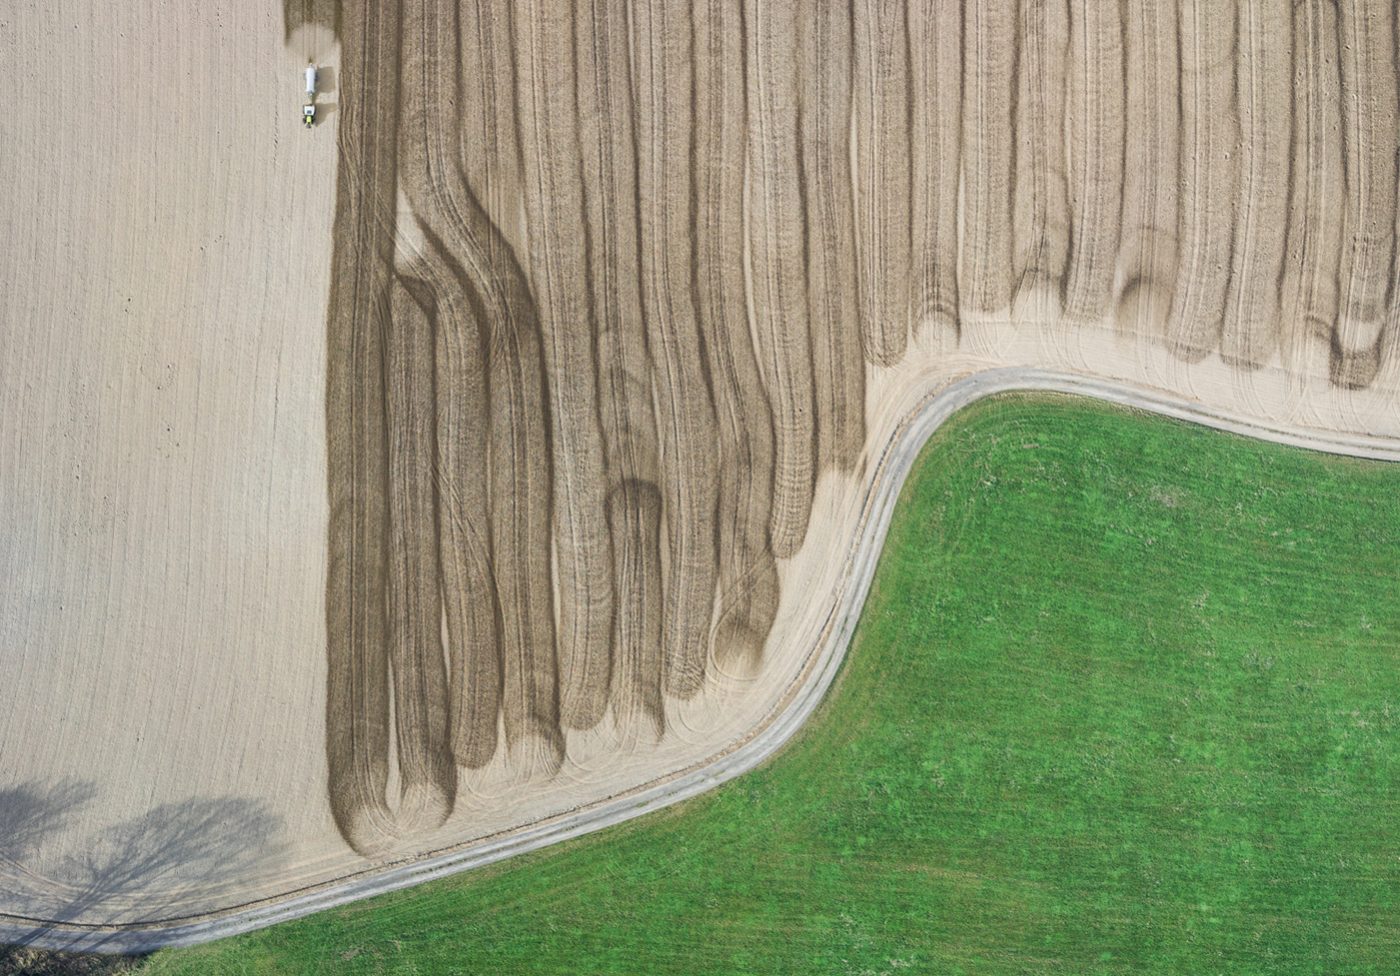 Luftaufnahme (Airshot, aerial photography) für CLAAS Landmaschinen - Visualisierung von Arbeitsprozessen, hier Düngen des Feldes © Industriefotograf Thorsten Schmidtkord Düsseldorf